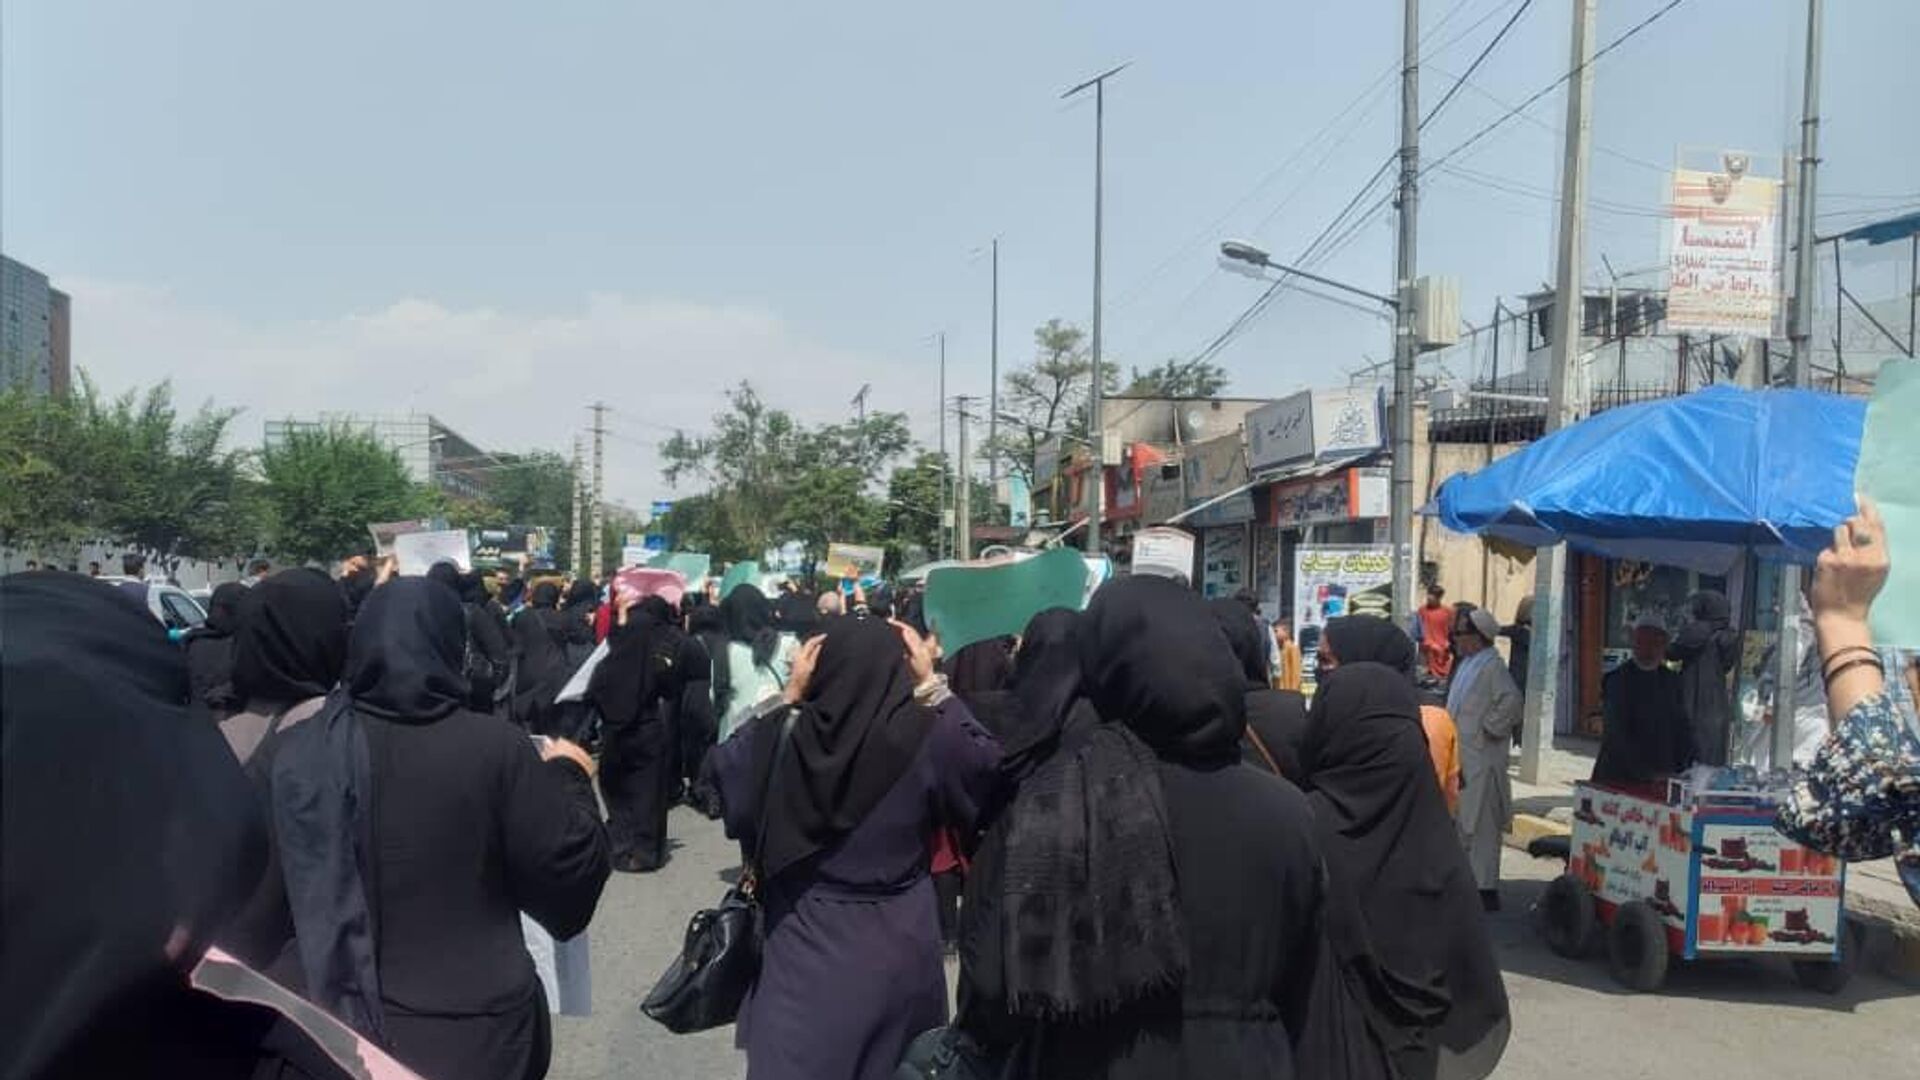   اعتراض زنان در کابل با گلوله طالبان پاسخ داده شد   - اسپوتنیک افغانستان  , 1920, 10.09.2022